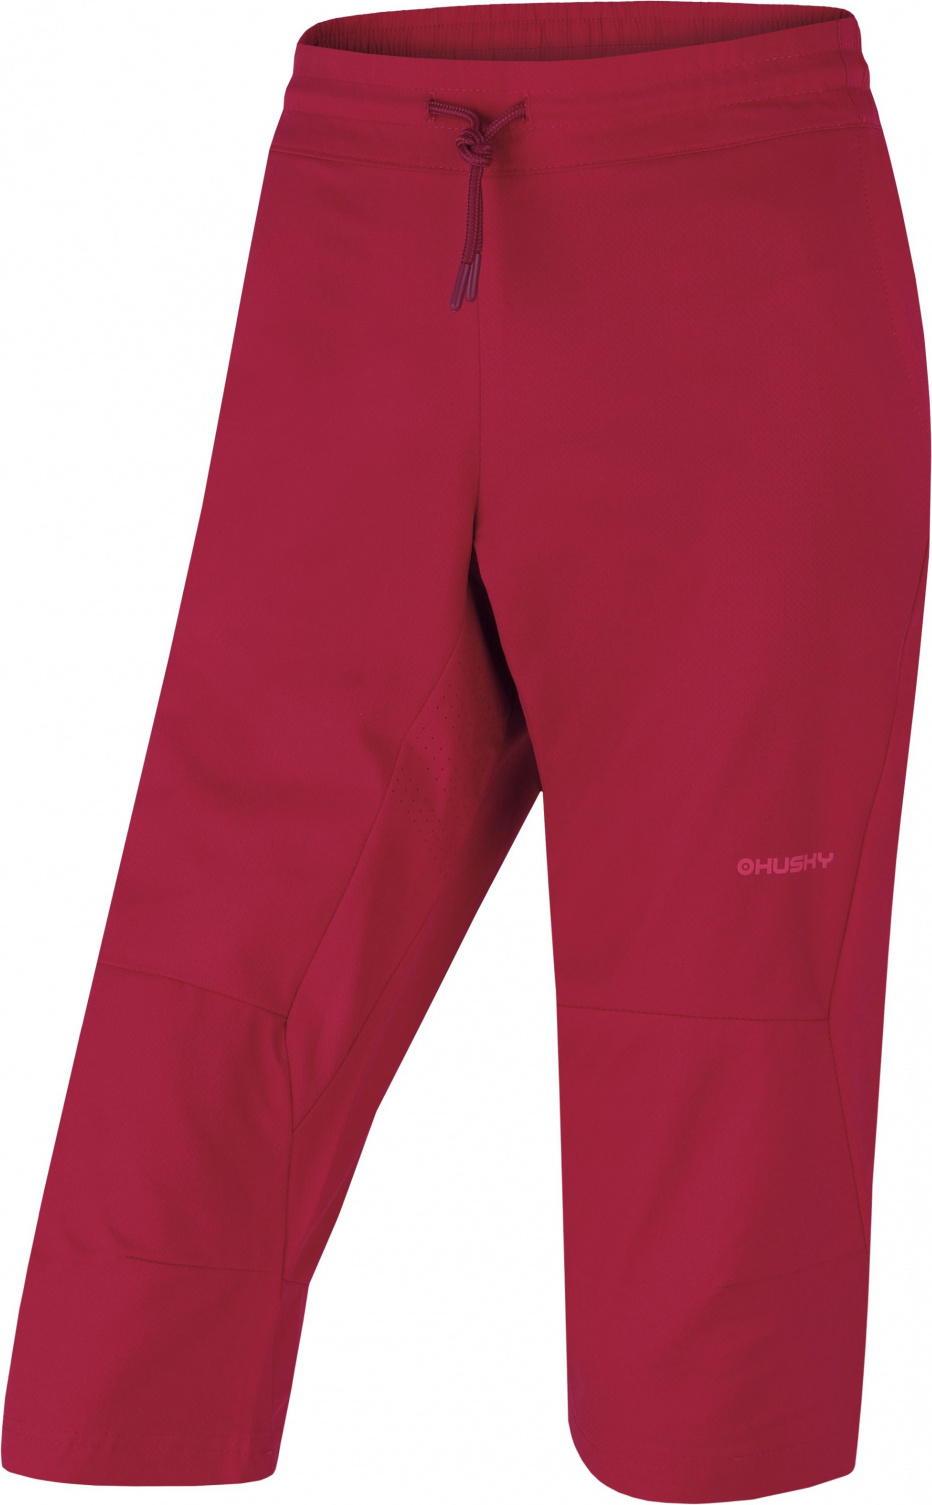 Dámské outdoorové 3/4 kalhoty HUSKY Speedy červené Velikost: M